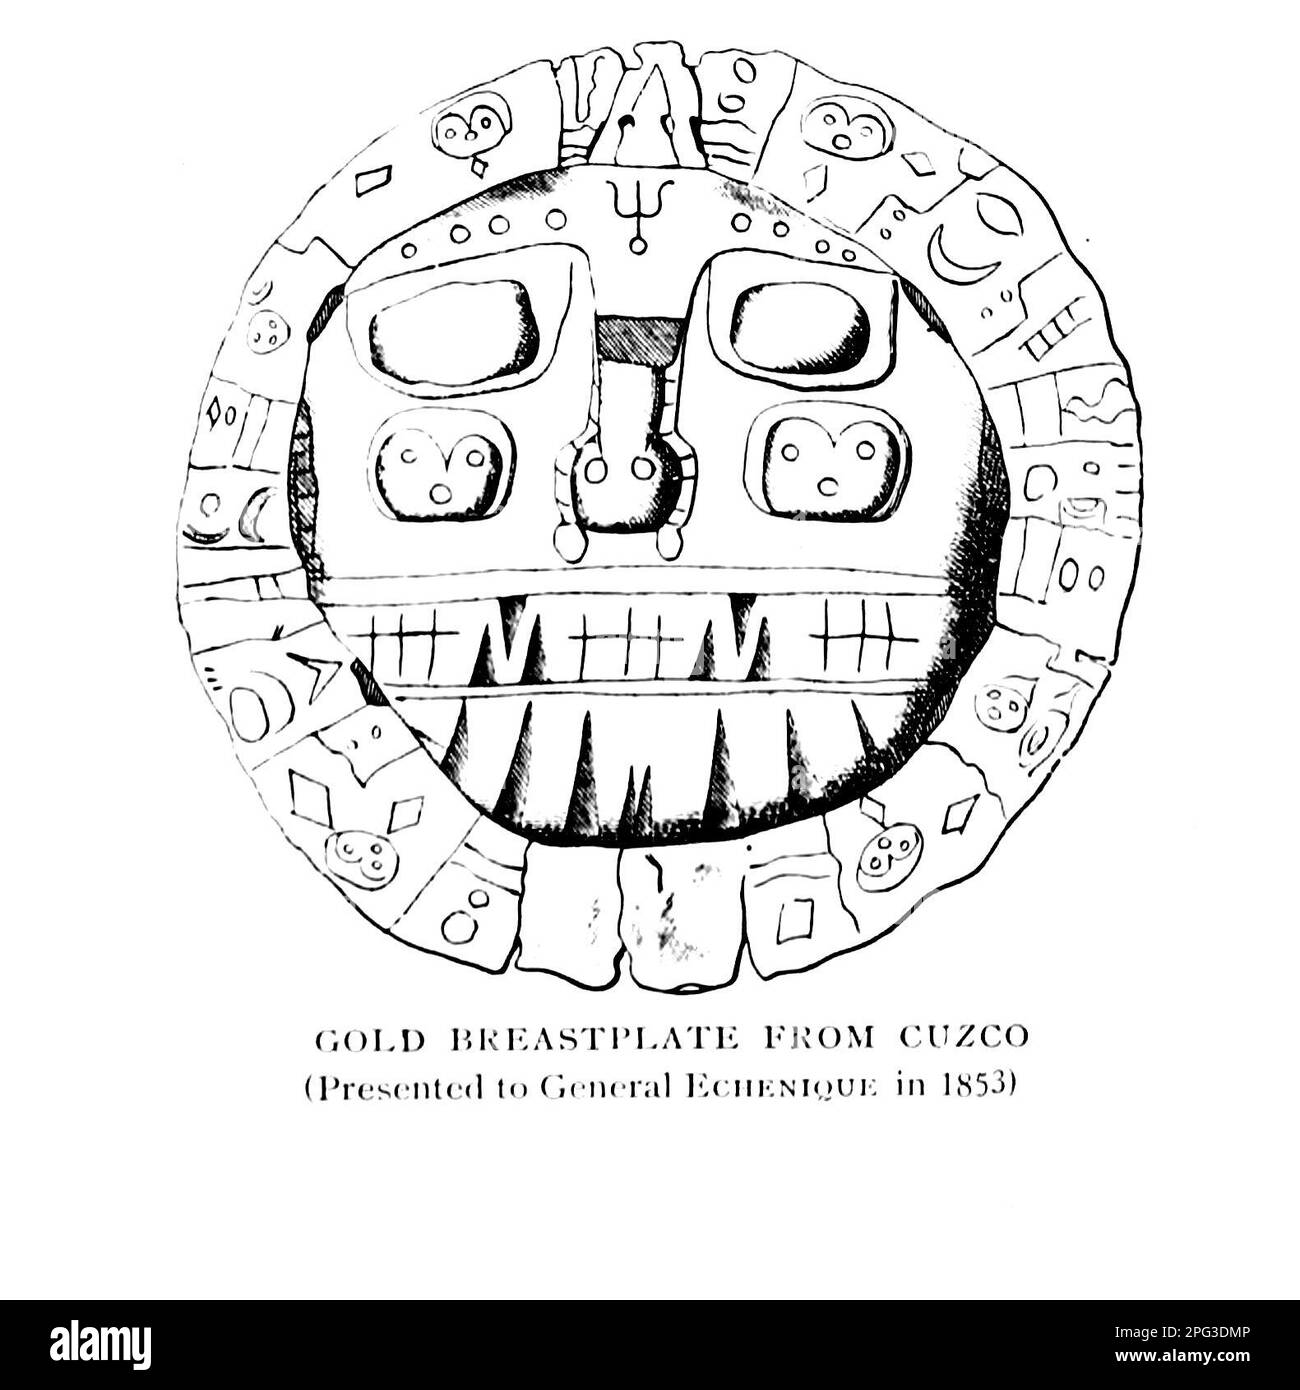 Pettorale d'oro di Cuzco tratto dal libro " The Incas of Peru " DI SIR CLEMENTS MARKHAM, K.C.B. Pubblicato a New York da Dutton 1912 Foto Stock